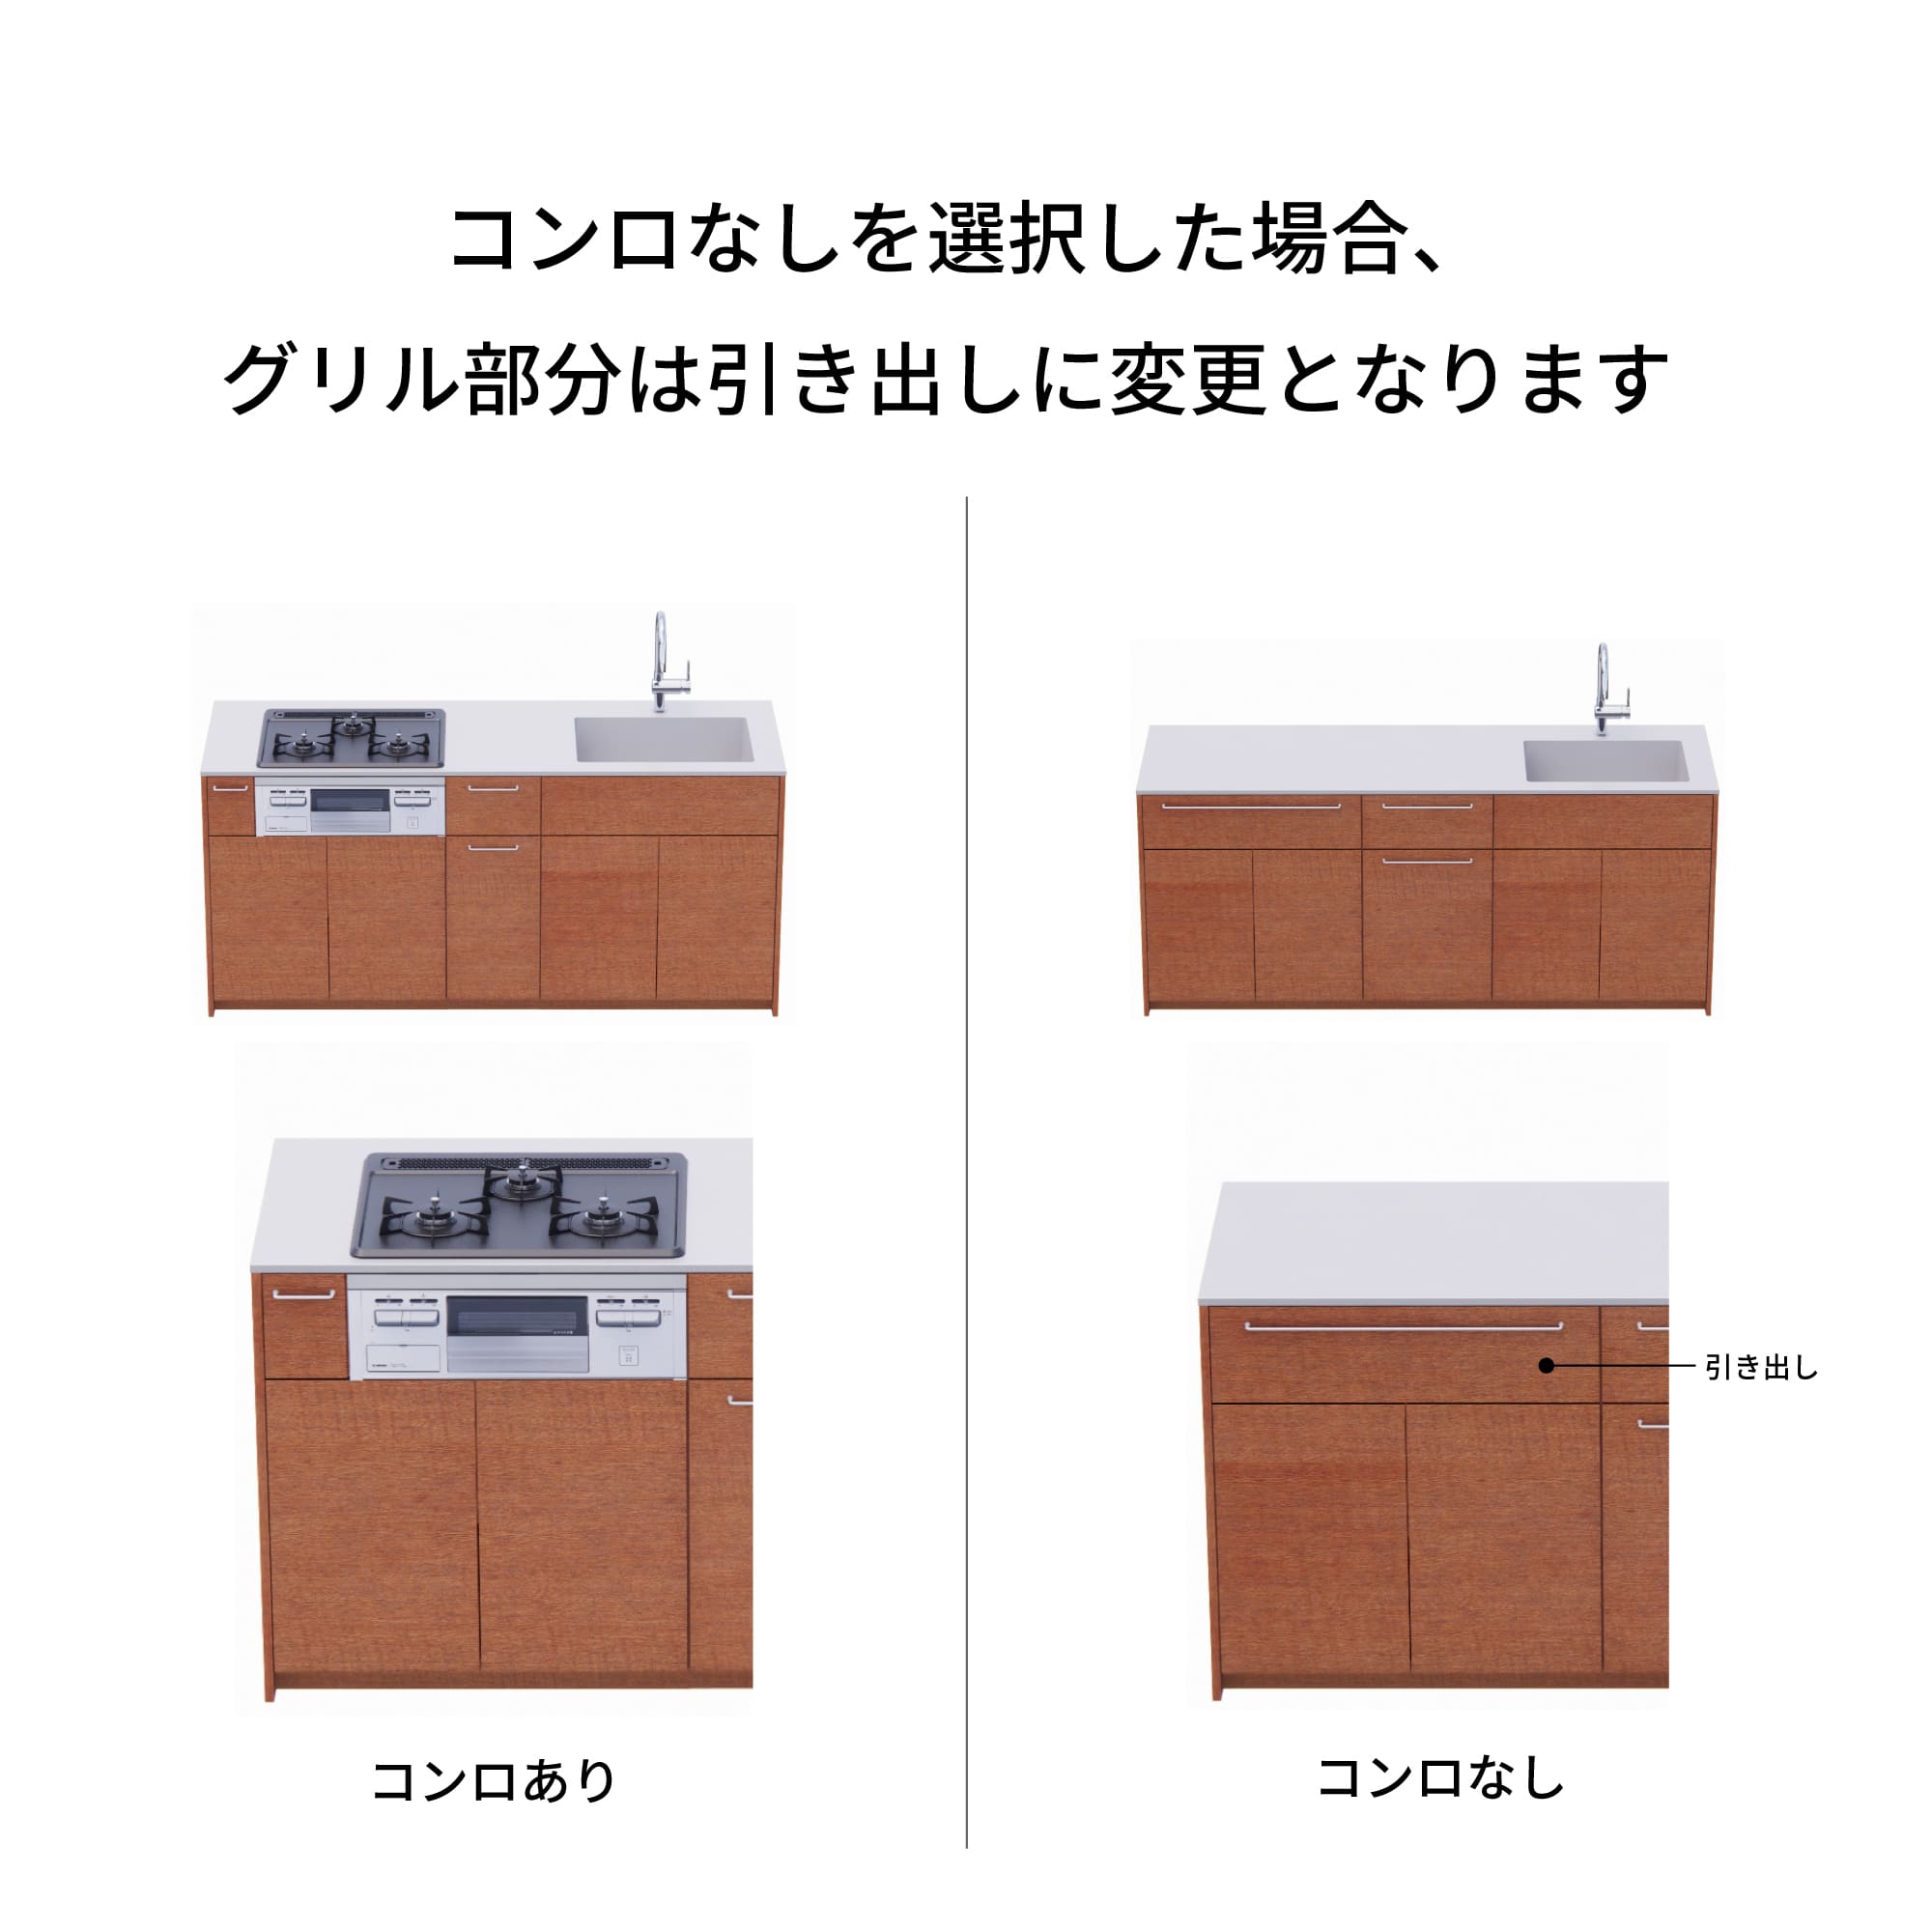 木製システムキッチン 壁付け型 W1990・コンロなし / オーブンなし / 食洗機なし KB-KC022-14-G183 コンロ無しの場合、通常魚焼きグリルがある部分は引き出しになっています